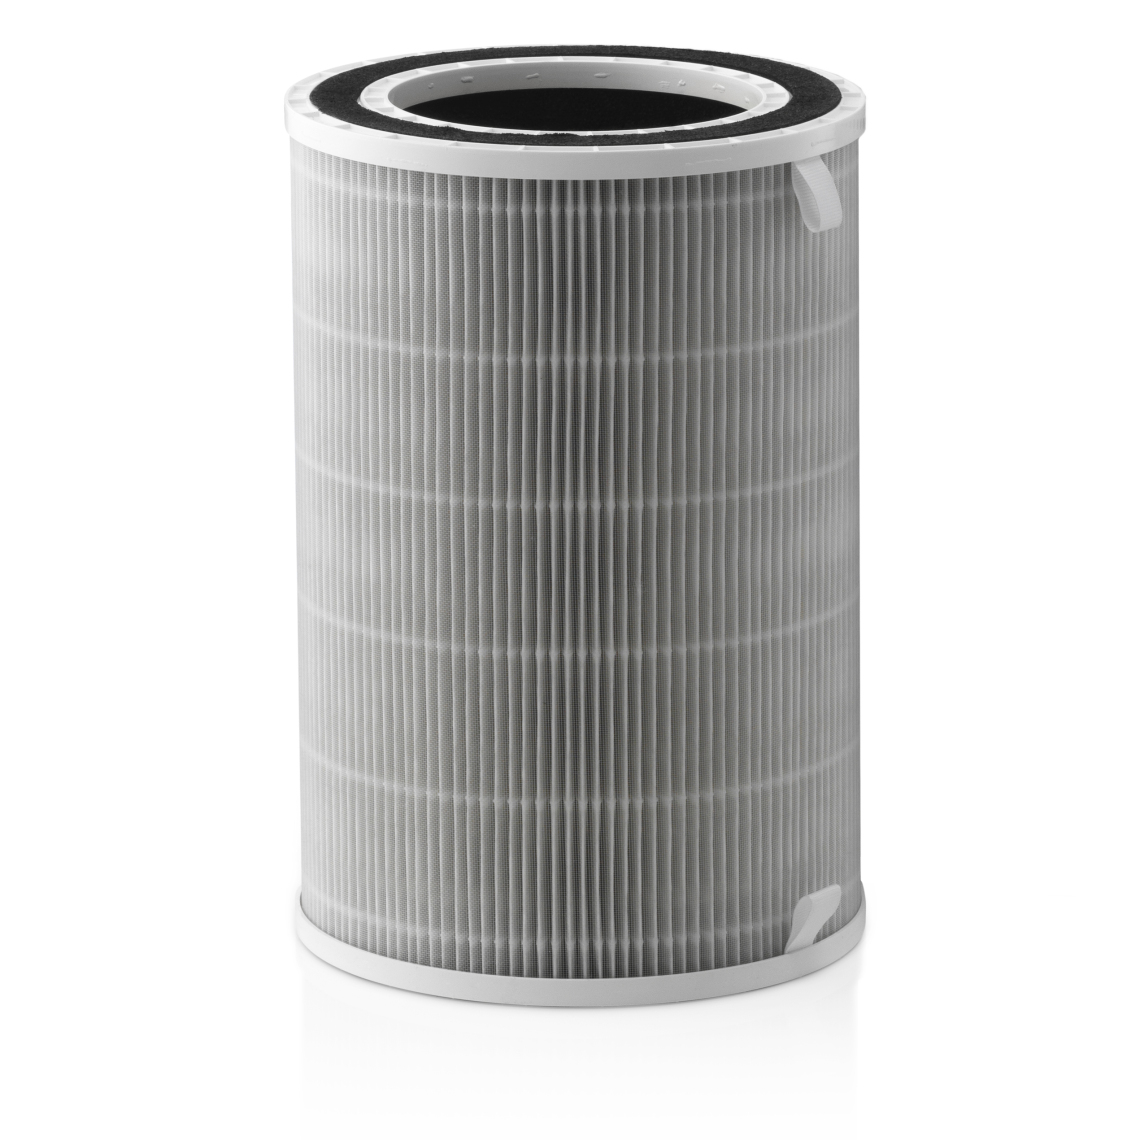 Trebs - Le filtre du purificateur d'air 49100 49101 - Filtre et accessoires refroidissement